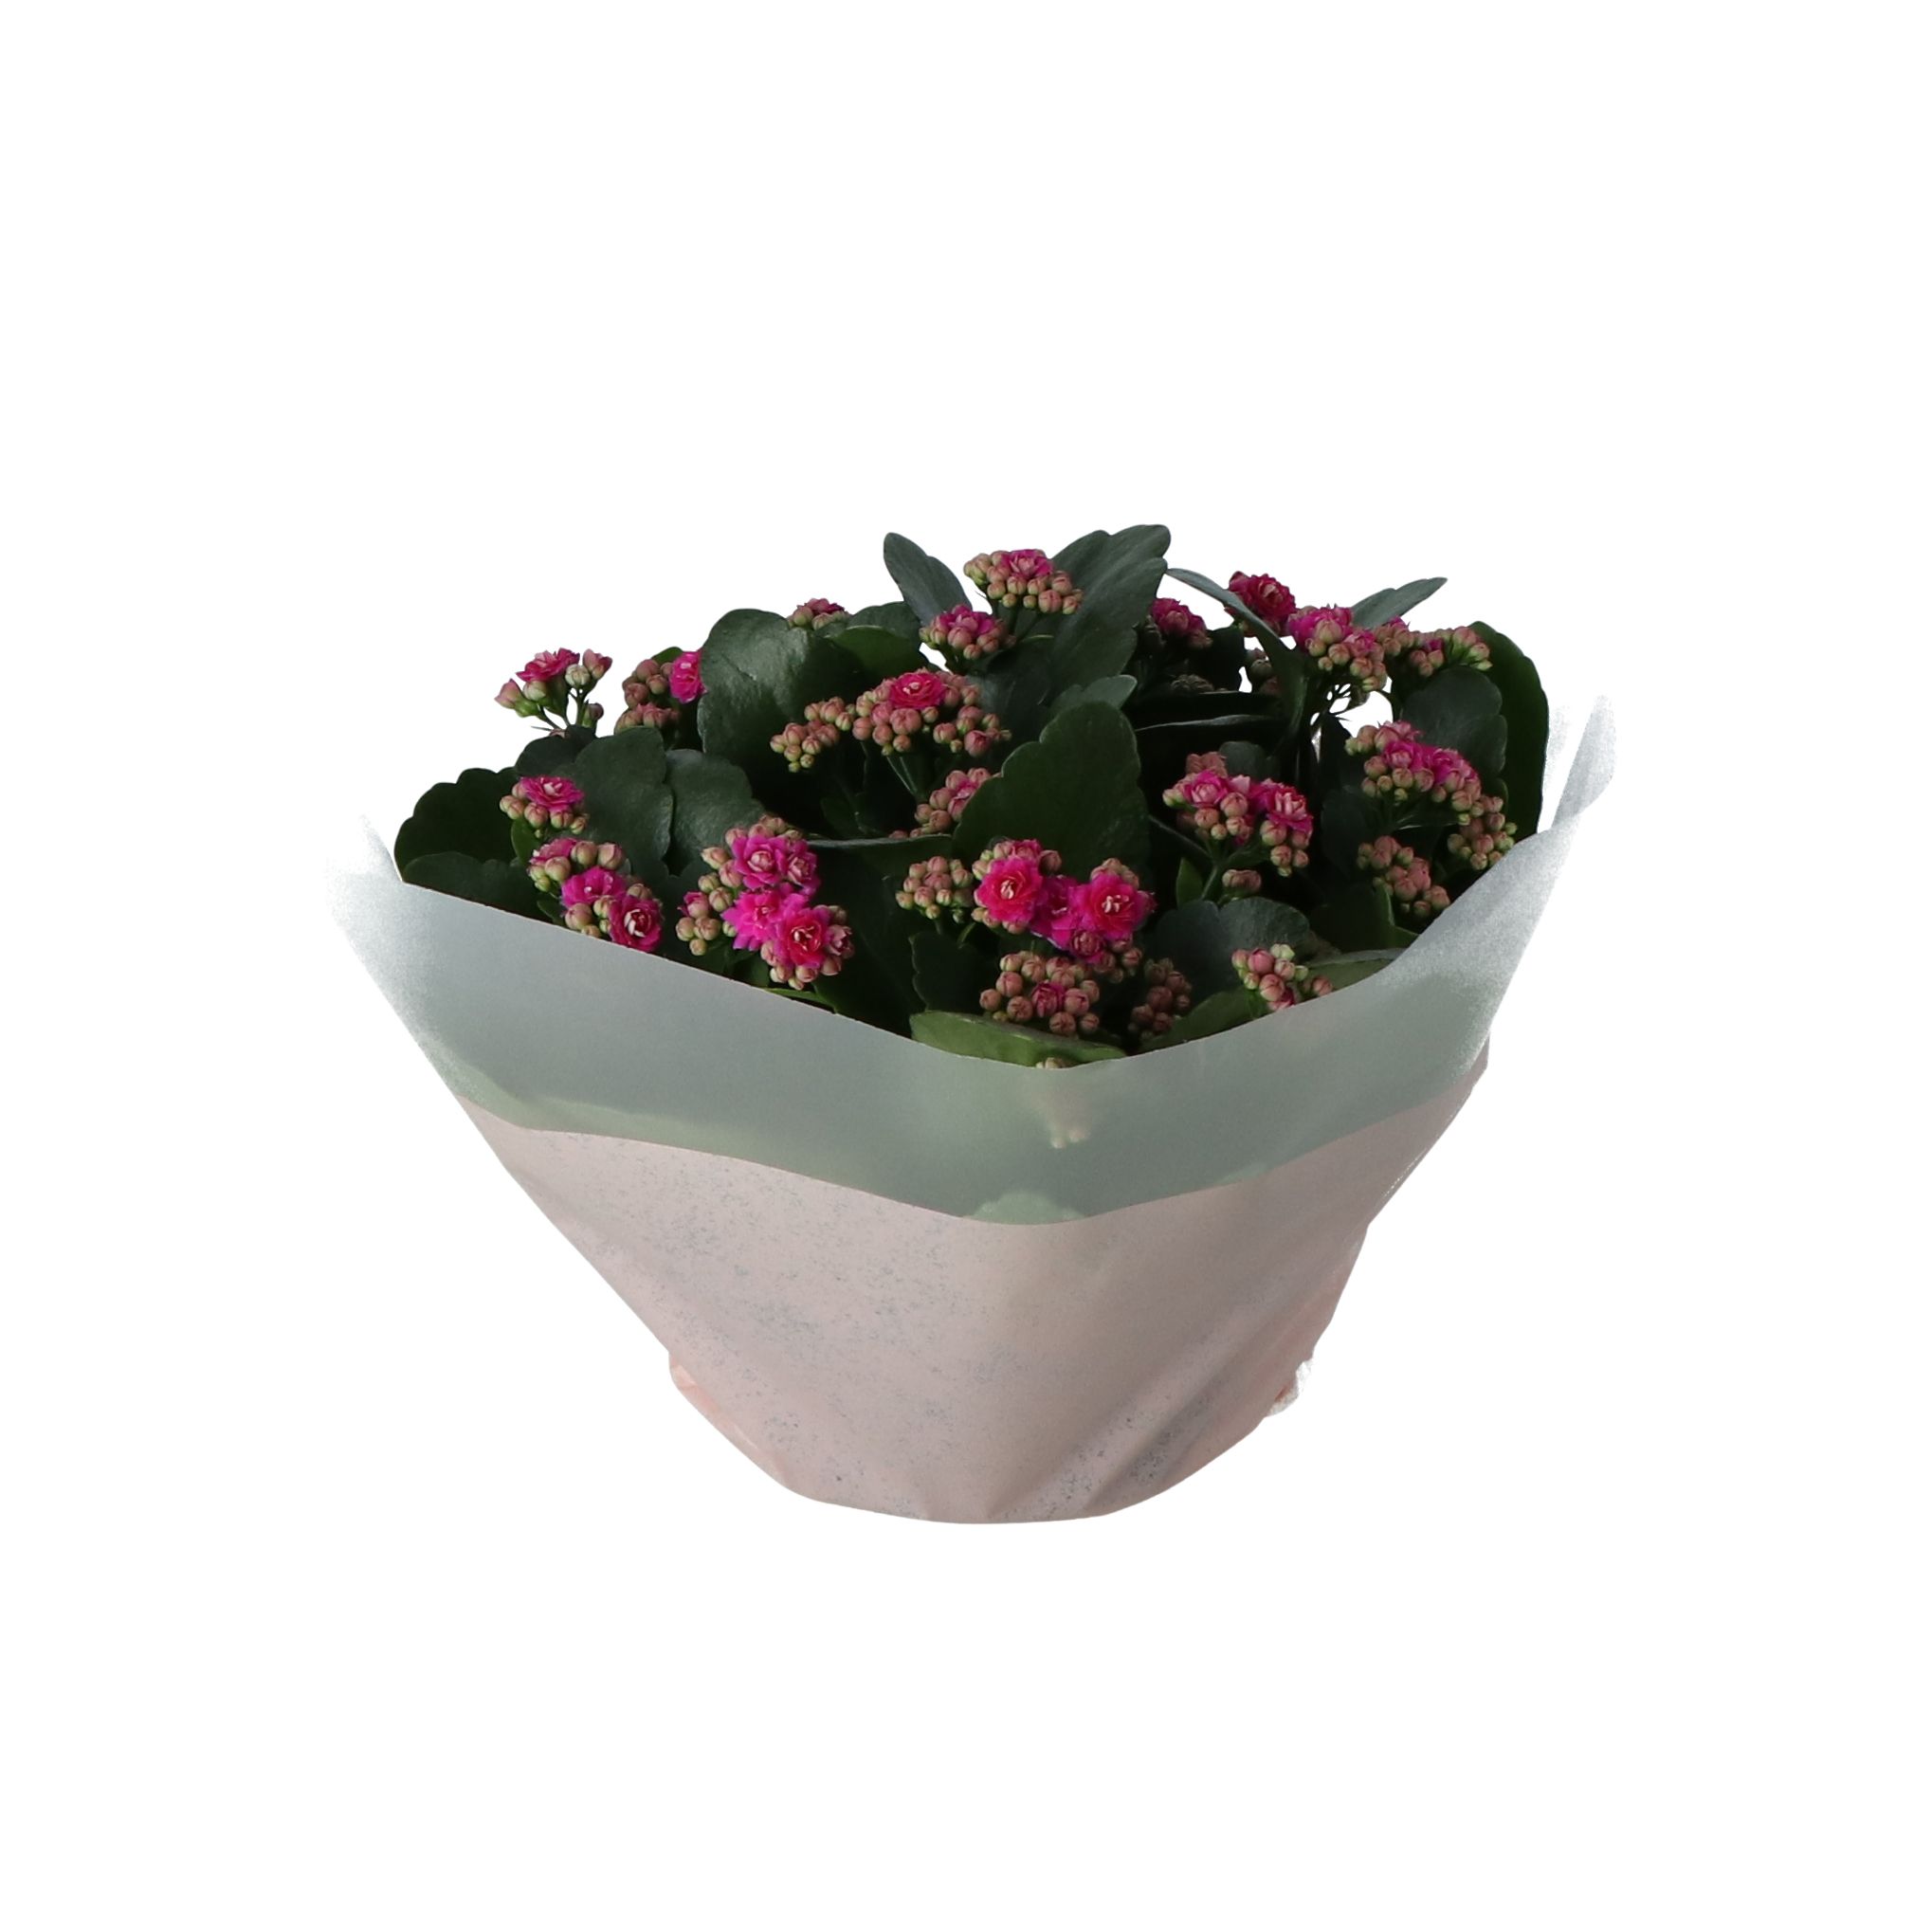 Indoor Plants Black Plastic Pot~5059340188027 02c?$MOB PREV$&$width=768&$height=768